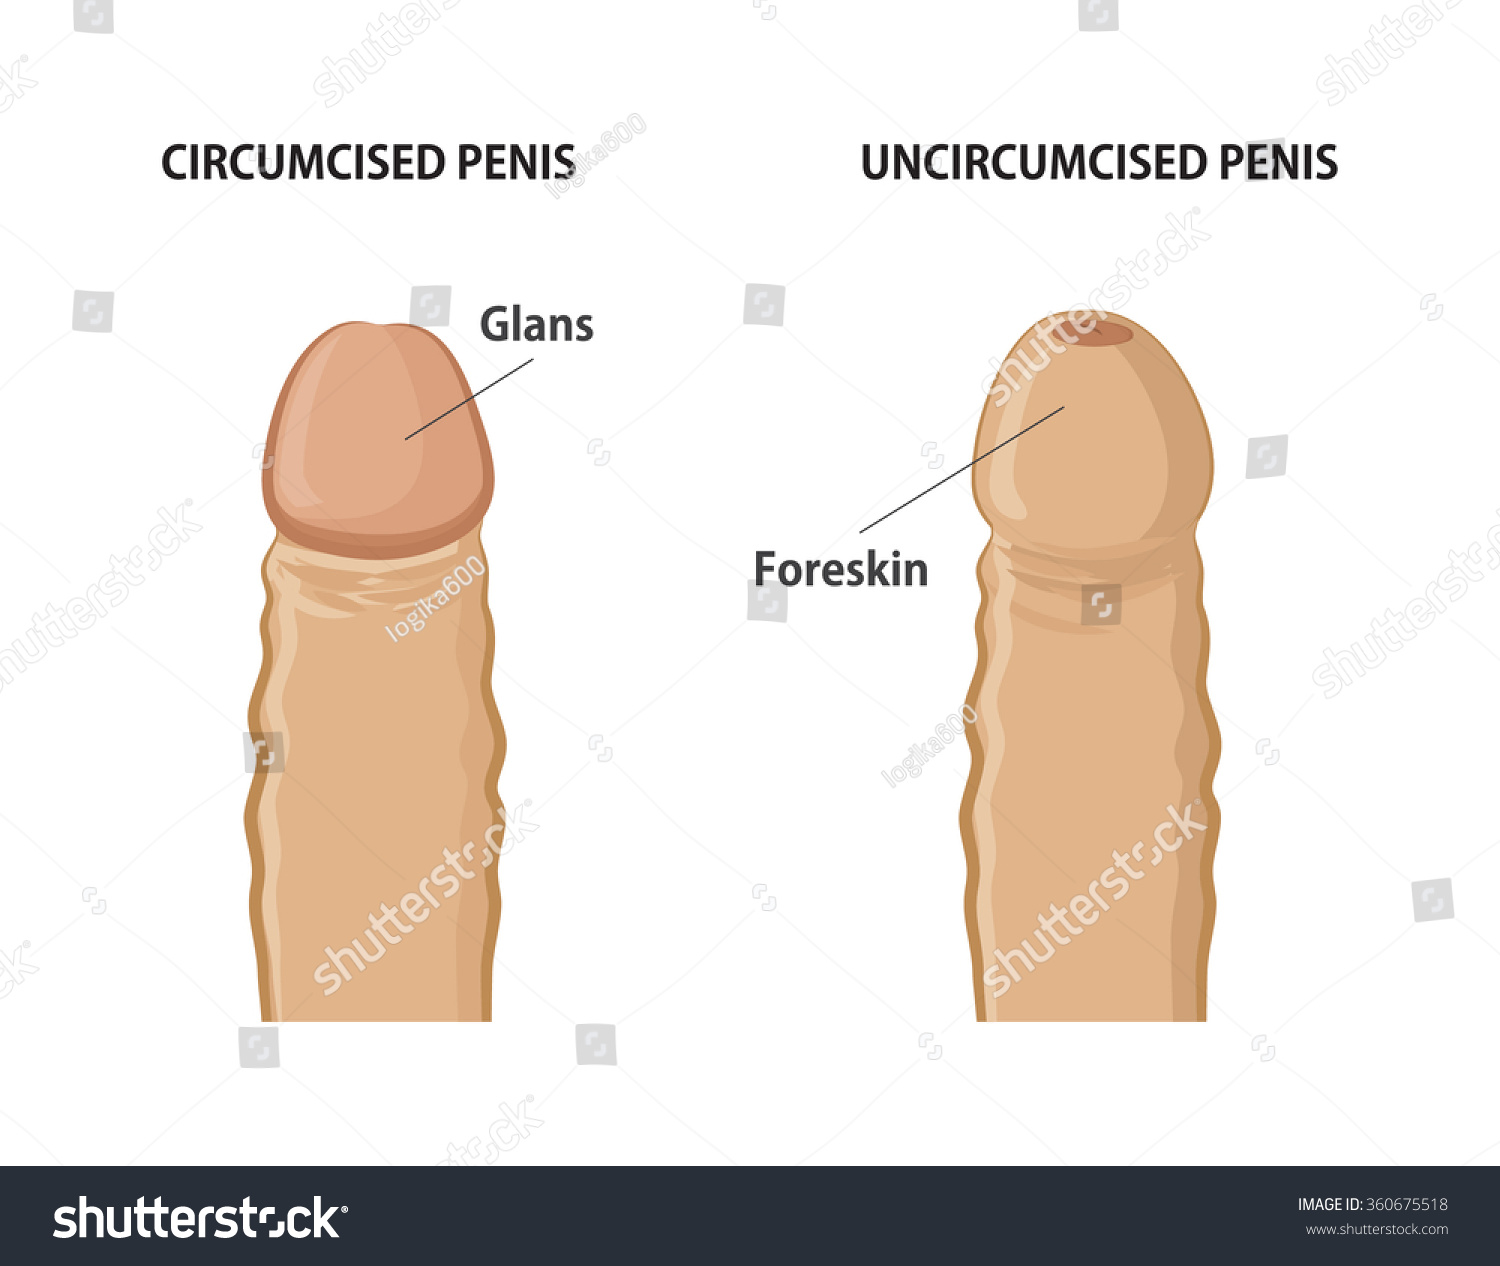 Uncircumsized Penis Image 37